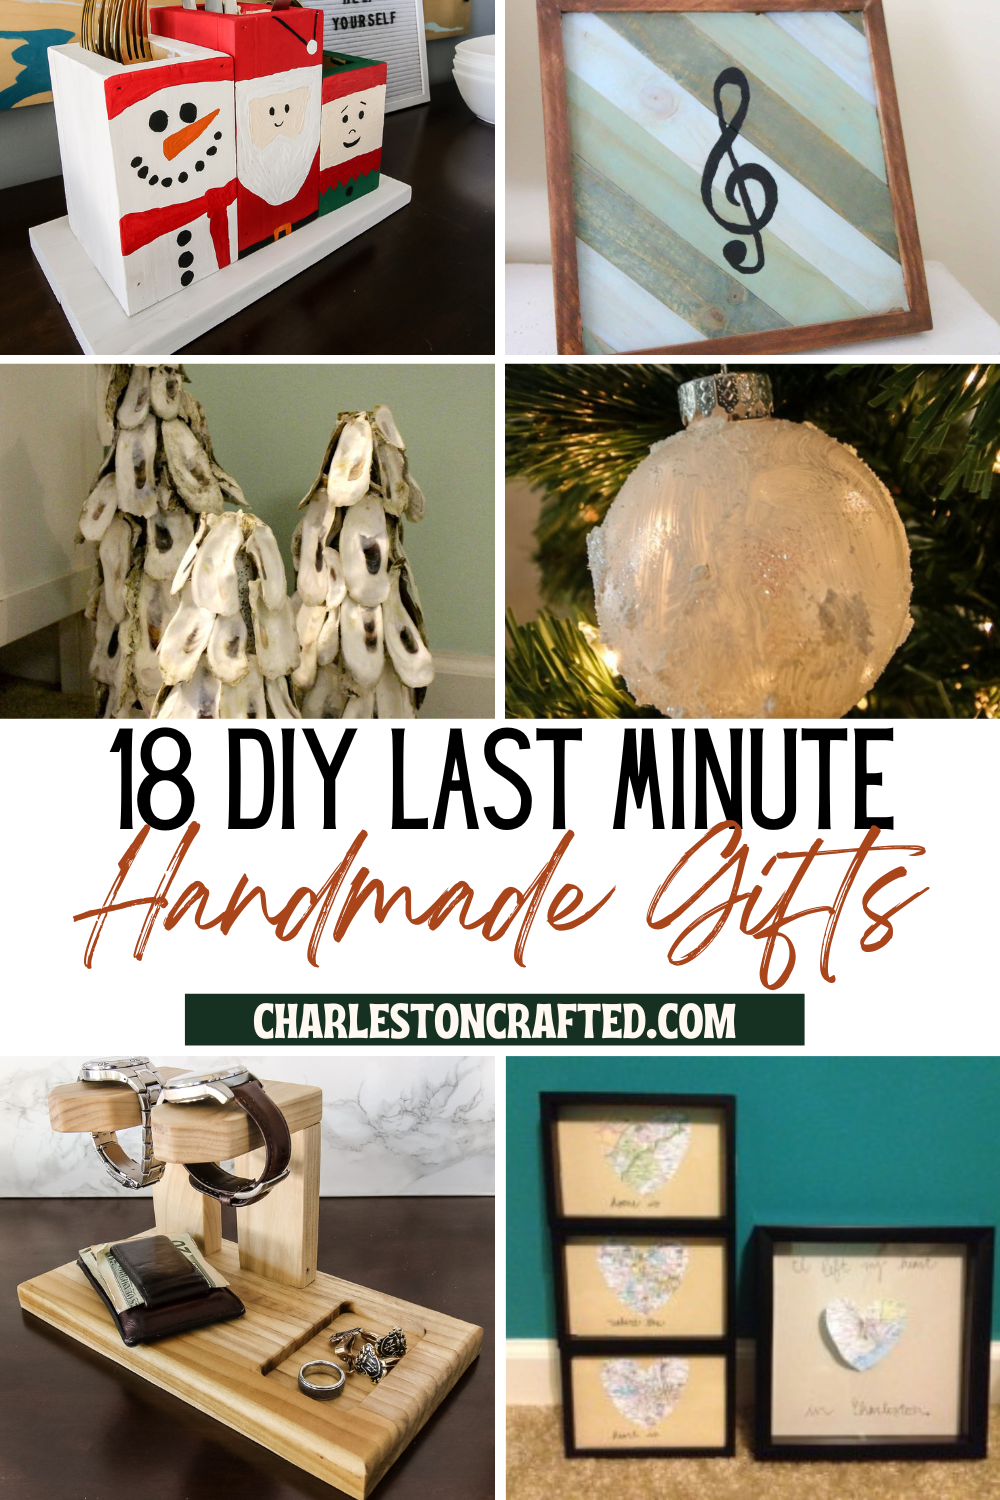 18 DIY Last Minute Handmade Gift Ideas